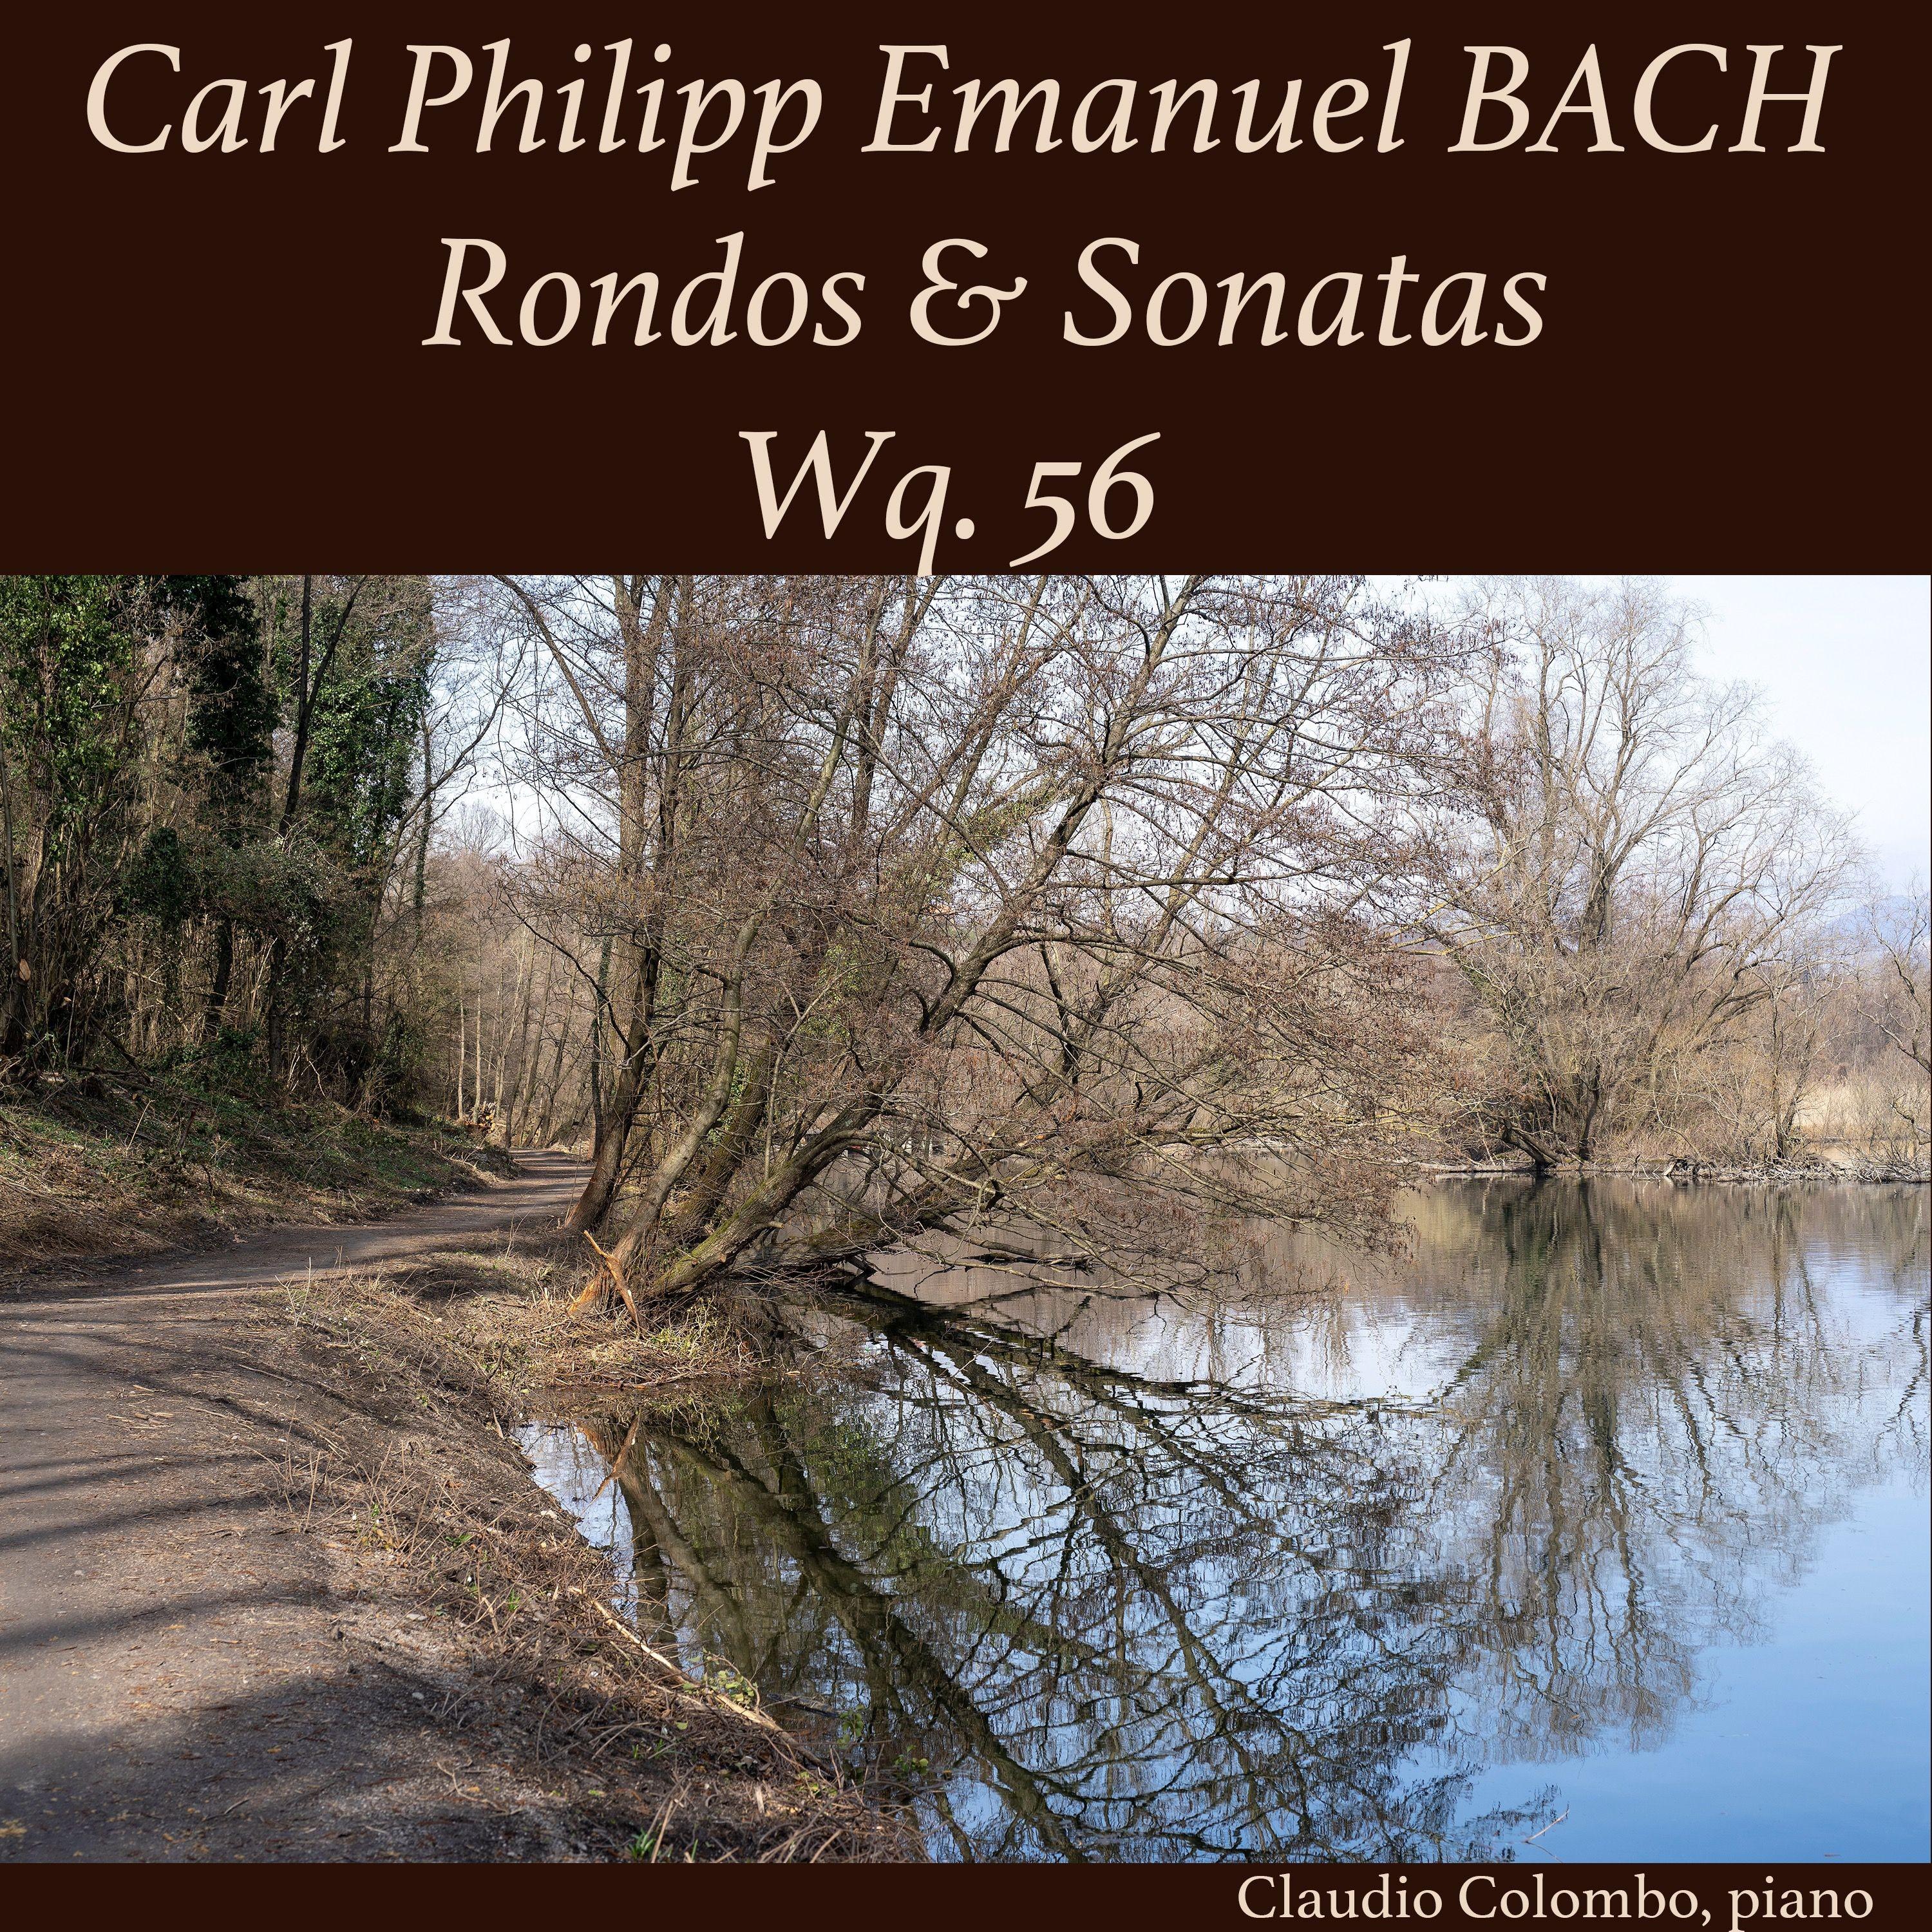 3 Sonaten und 3 Rondos fü r Kenner und Liebhaber, Wq. 56: Sonata I in G Major, II. Larghetto